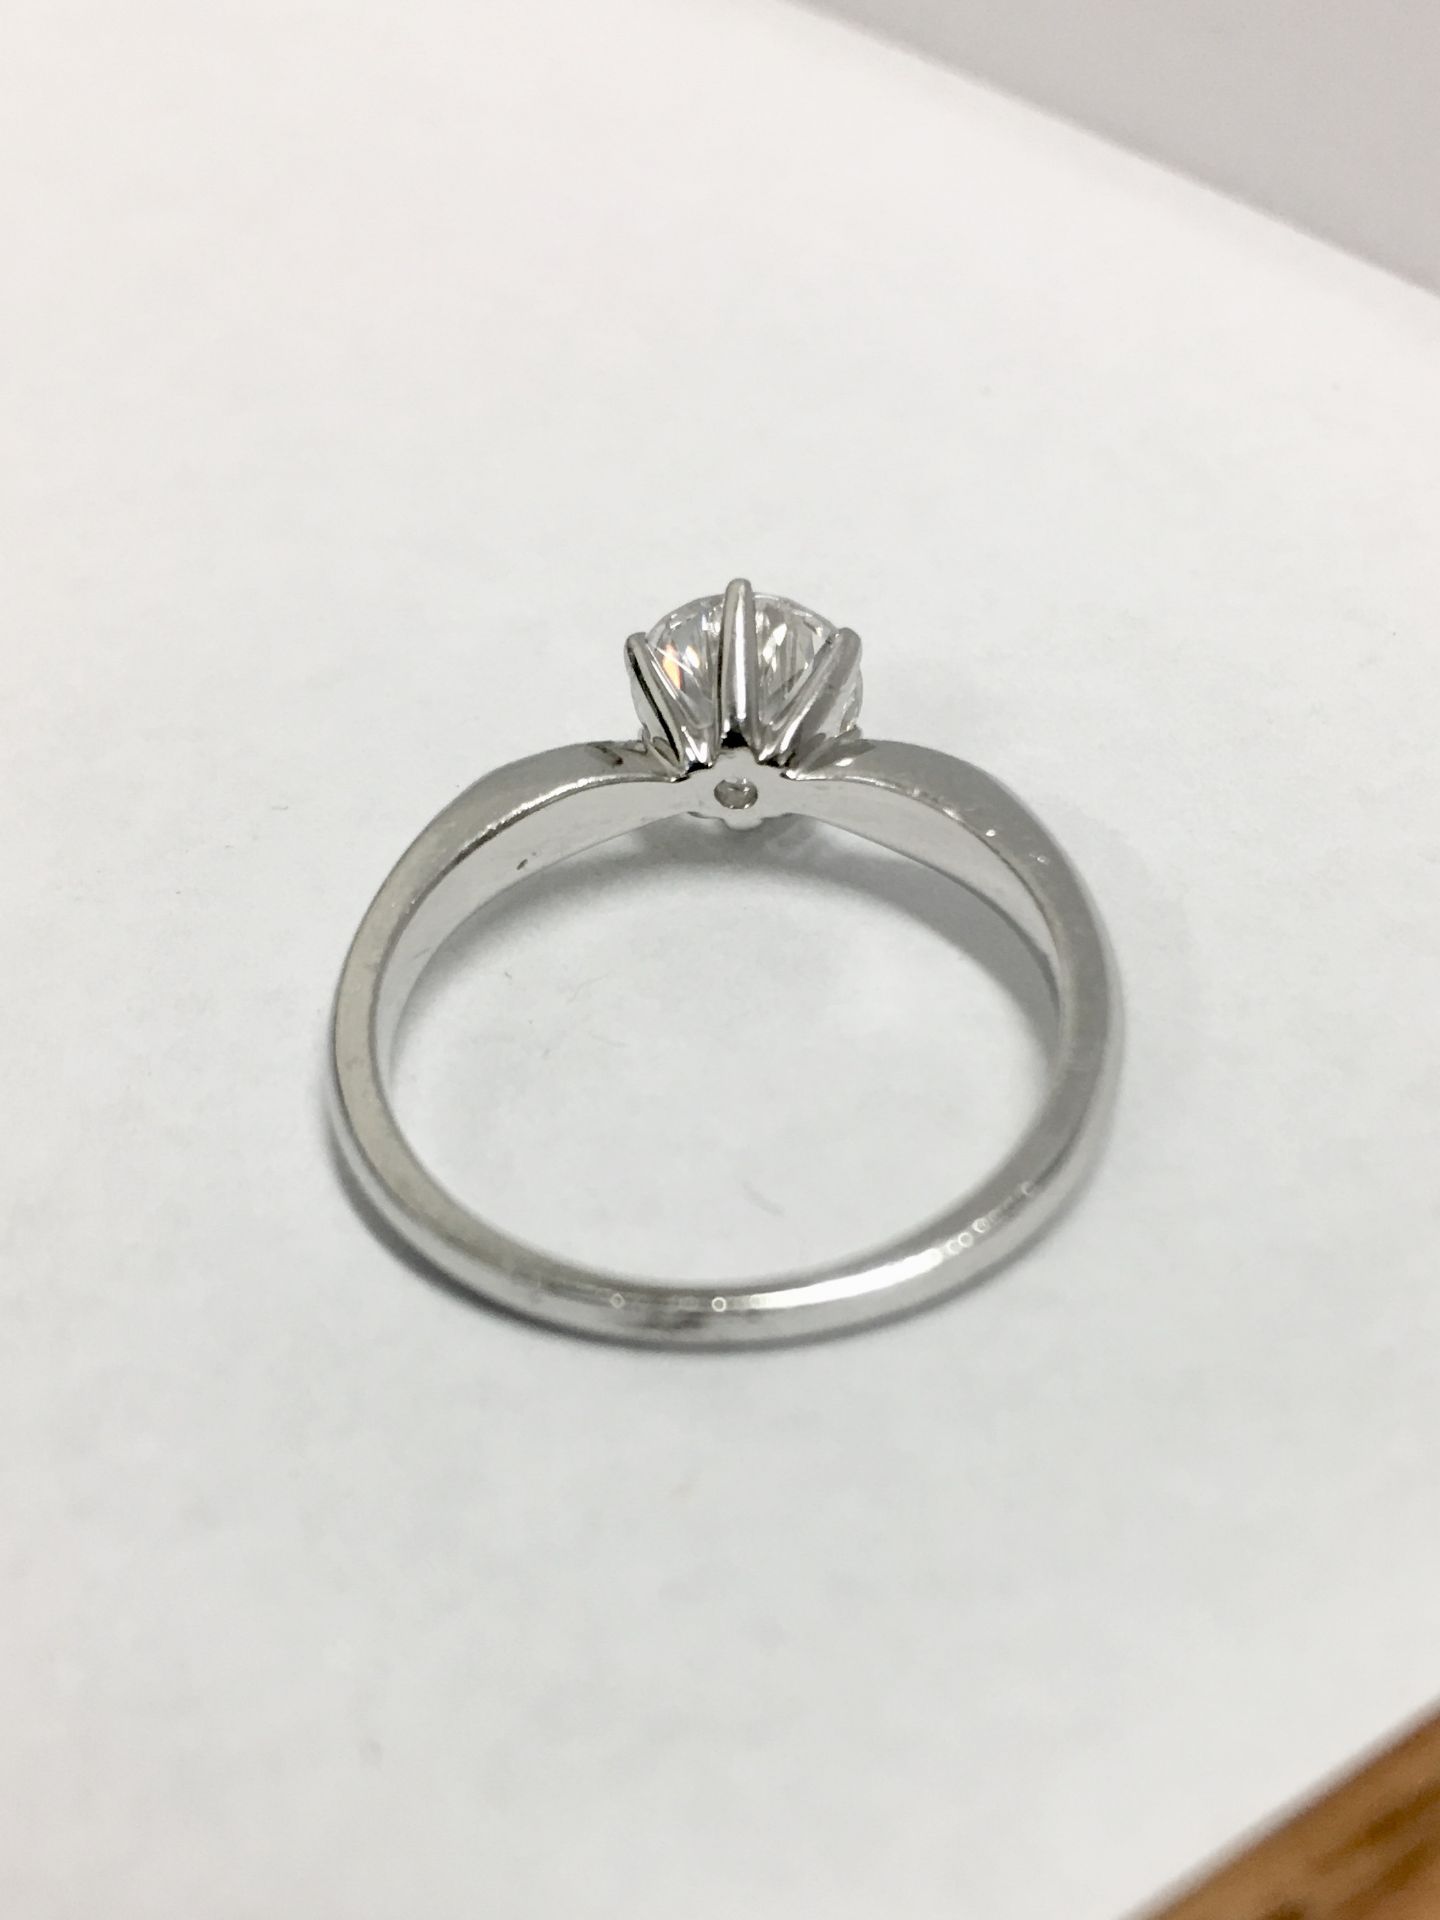 Platinum diamond solitaire ring,0.50ct brilliant cut diamond h colour vs clarity(clarity enhanced), - Bild 3 aus 4